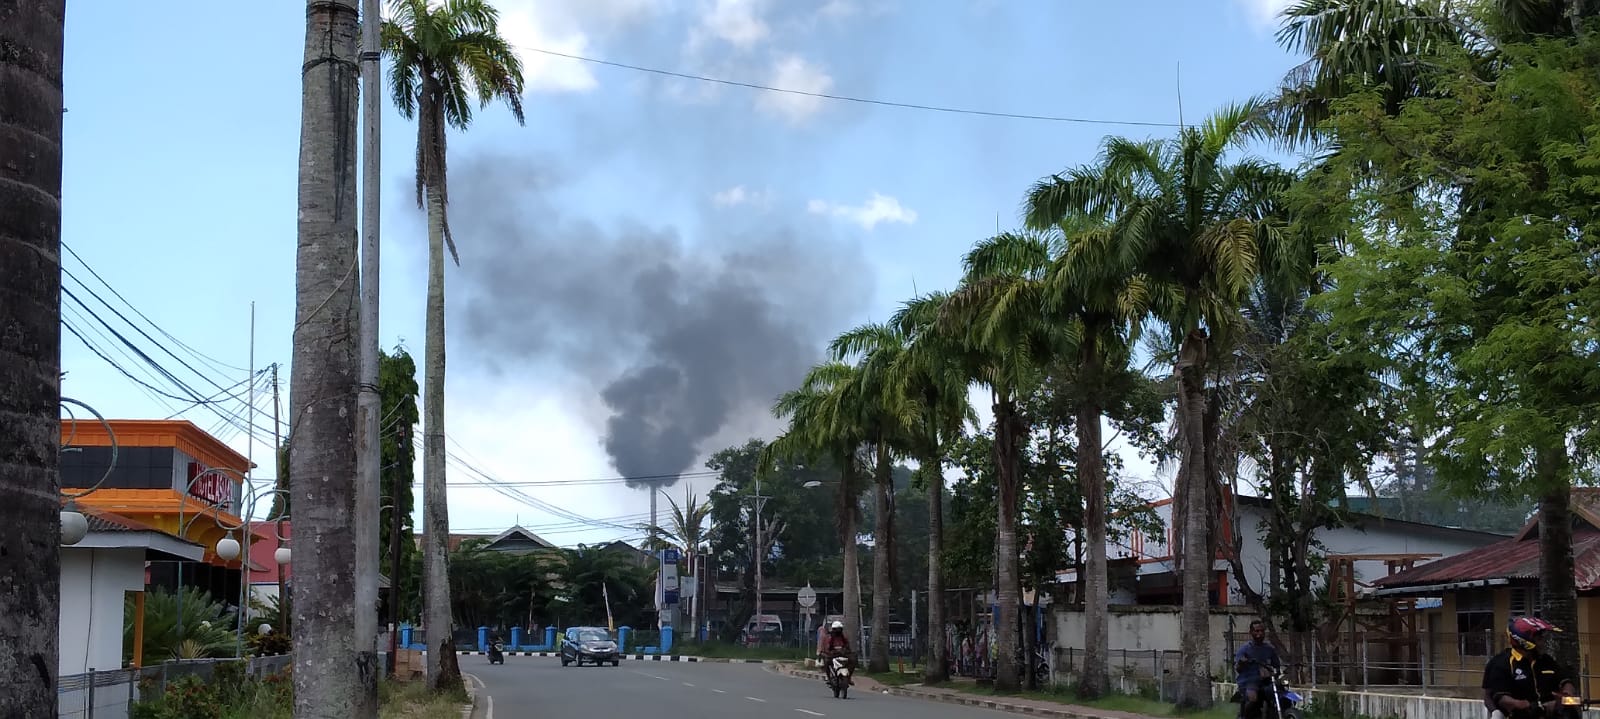 Kepulan asap dari mesin mesin incinerator yang digunakan membakar limbah – Surya Papua/ Yulianus Bwariat